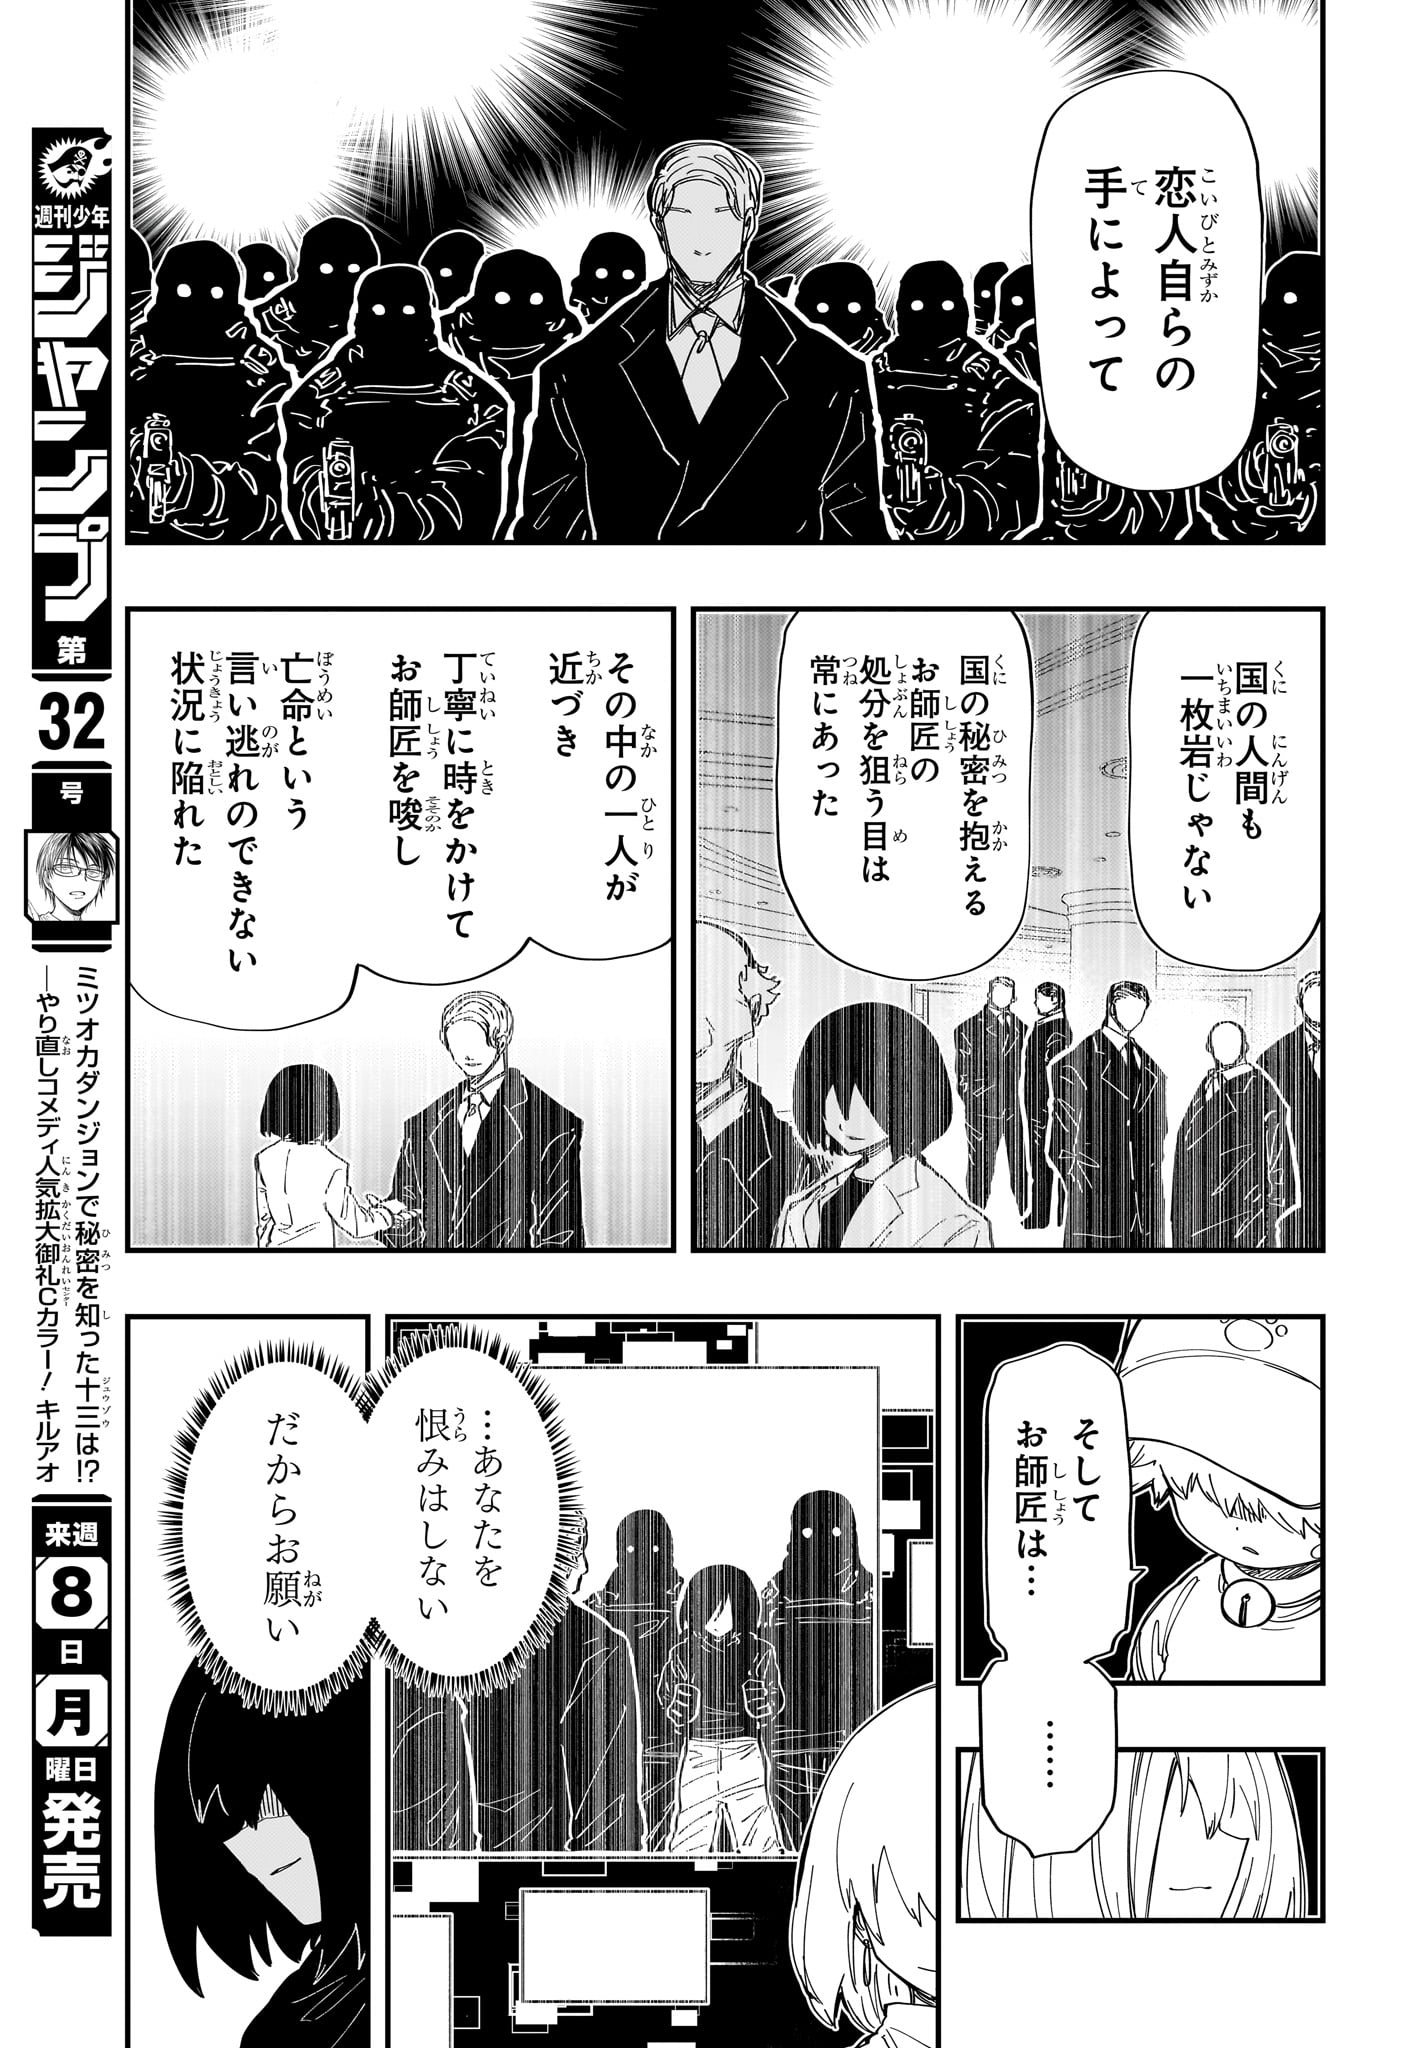 Yozakura-san Chi no Daisakusen - Chapter 232 - Page 5